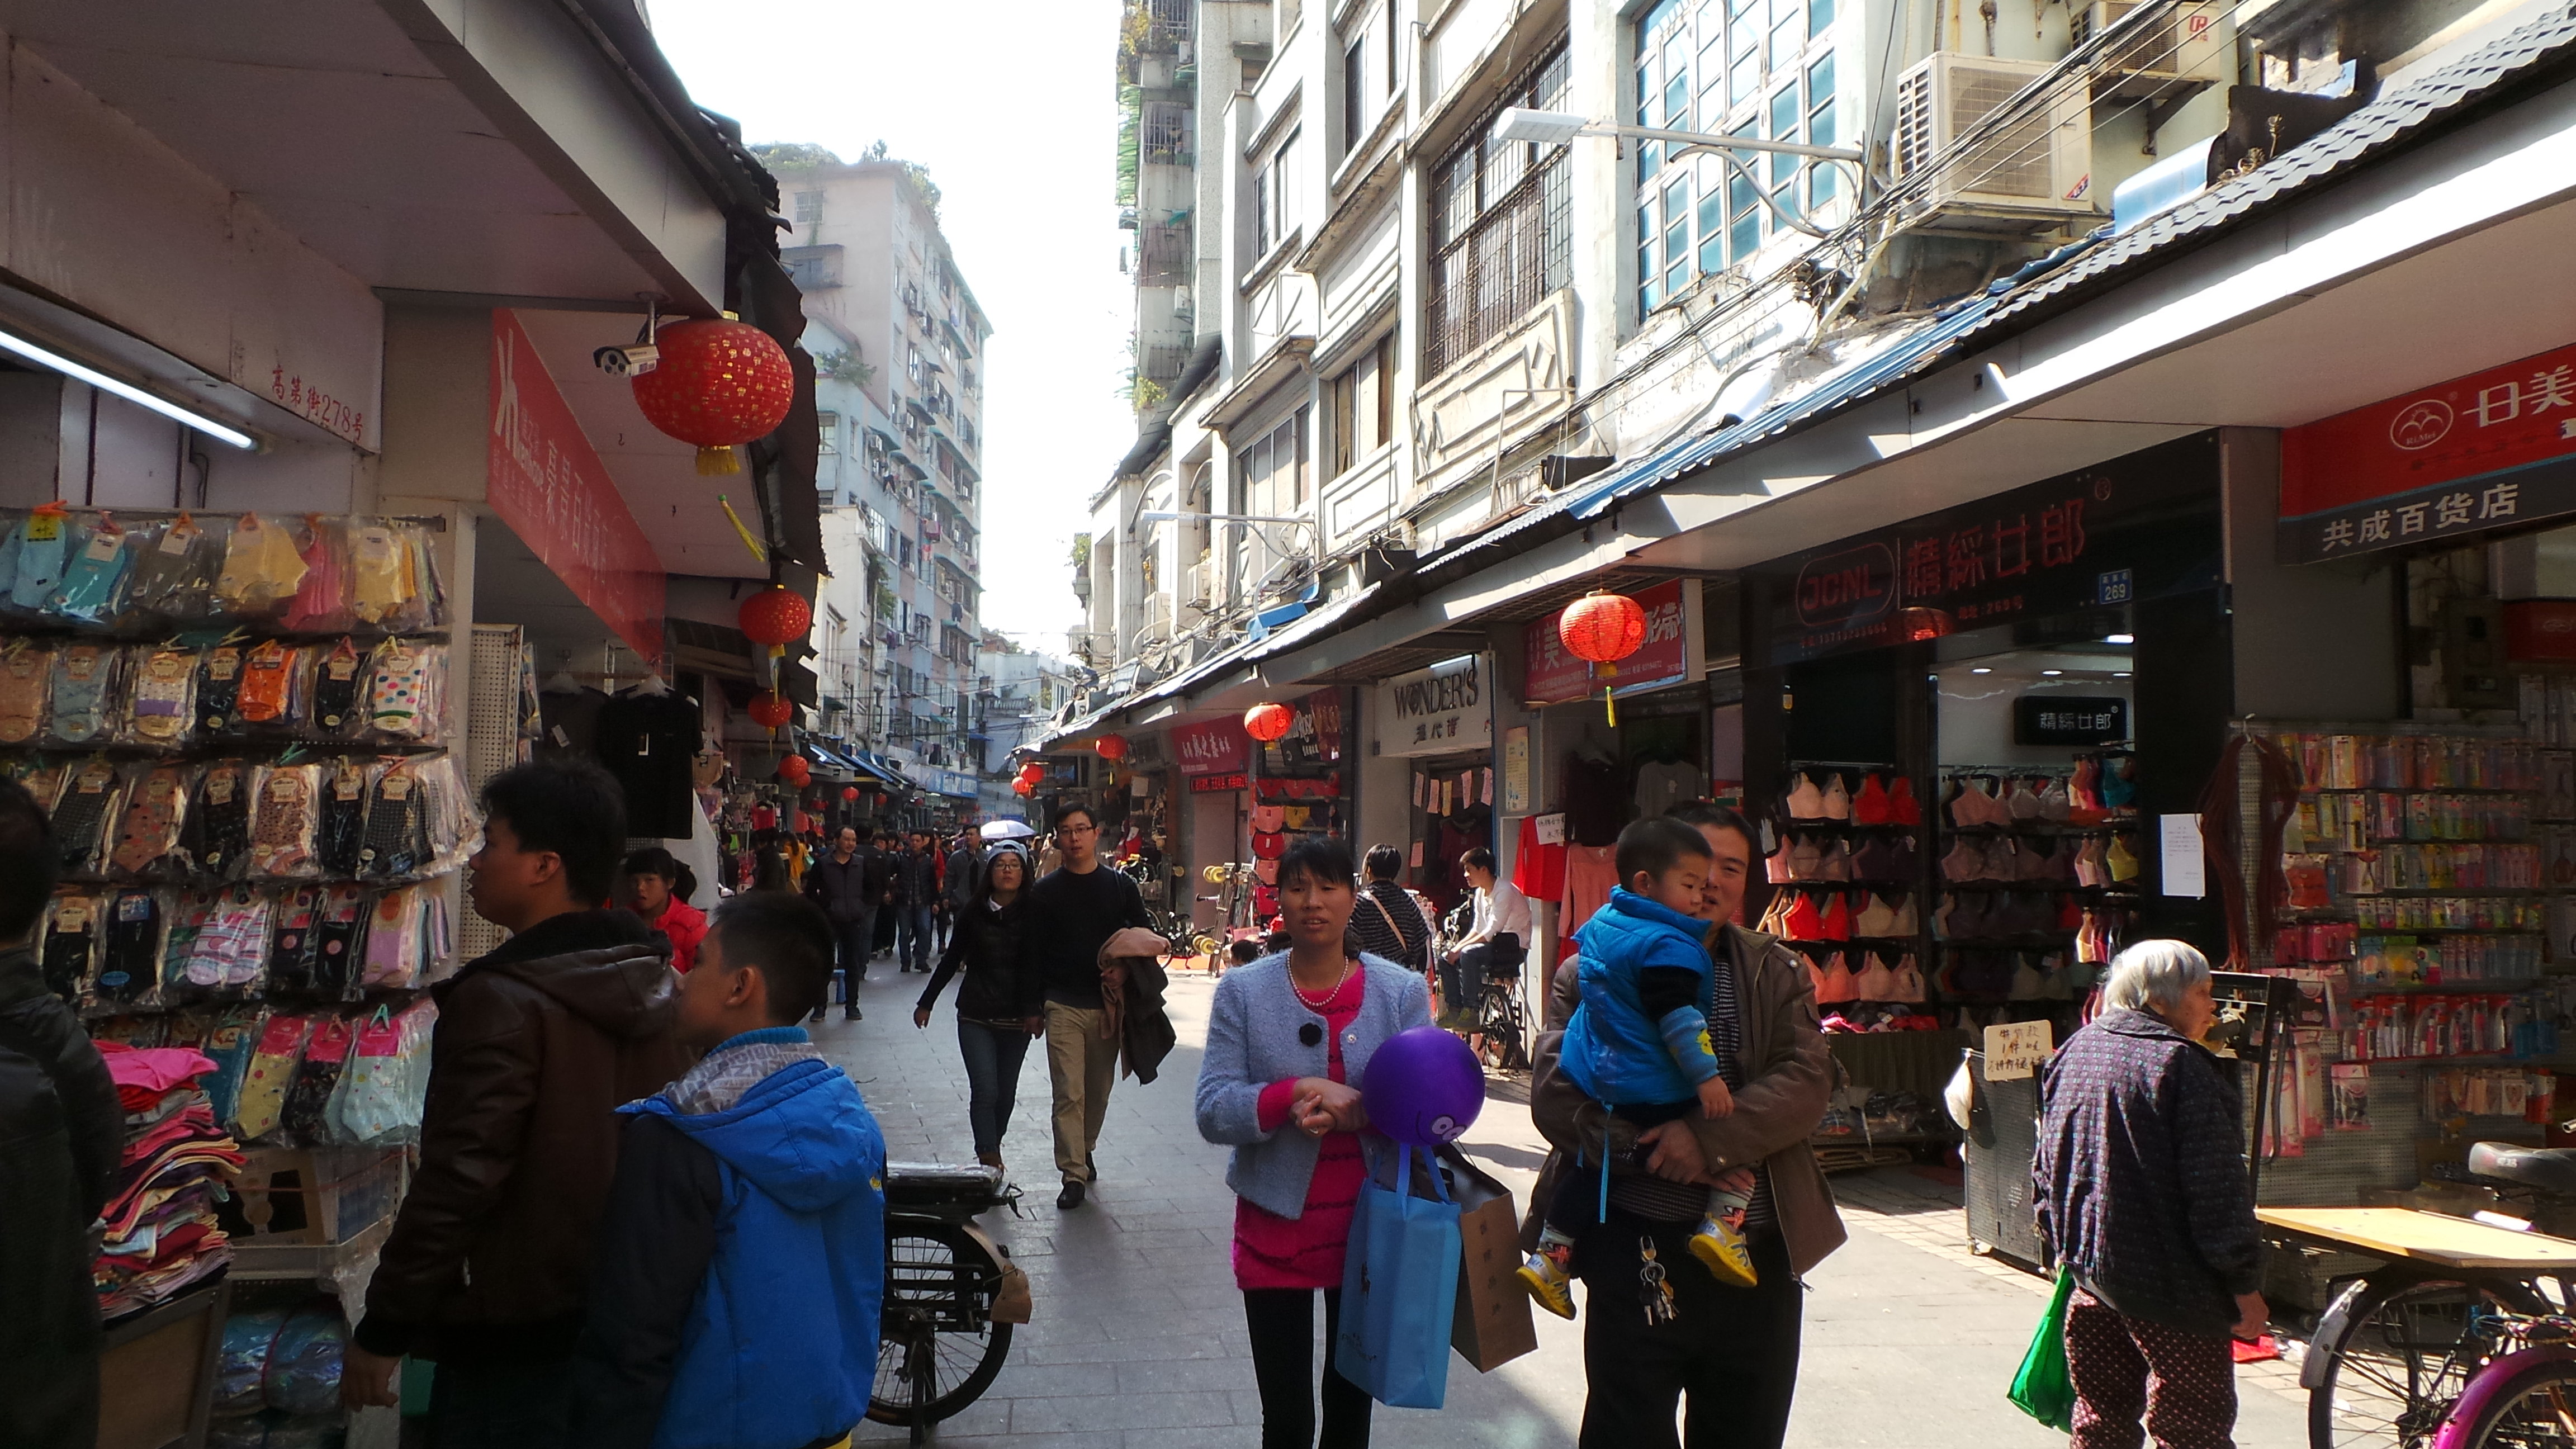 高第街是广州一条古老的商业街道,在改革开放初期曾经闻名全国